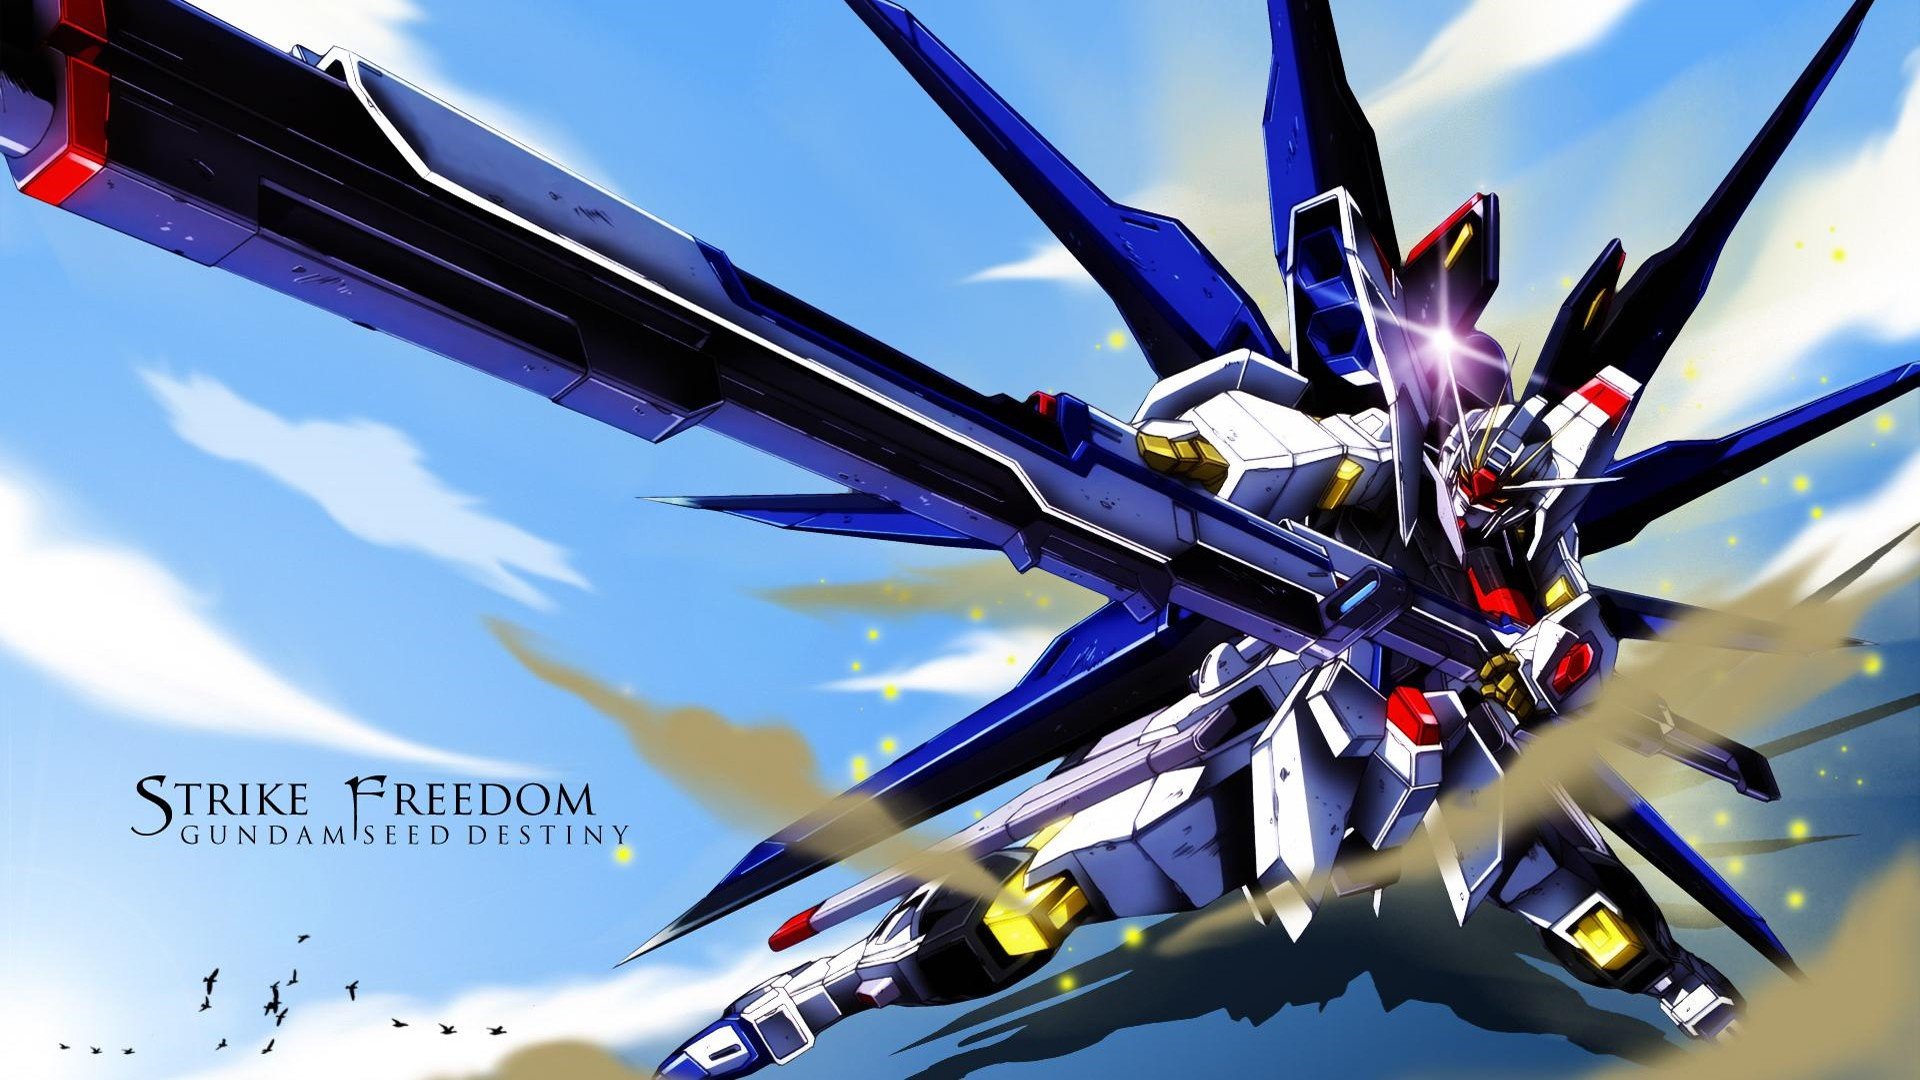 Gundam Seed Destiny .: Striker Freedom, Gundam, ZGMF X20A Strike Freedom, Mobile Suit Gundam SEED, Mobile Suit Gundam SEED Destiny Wallpaper